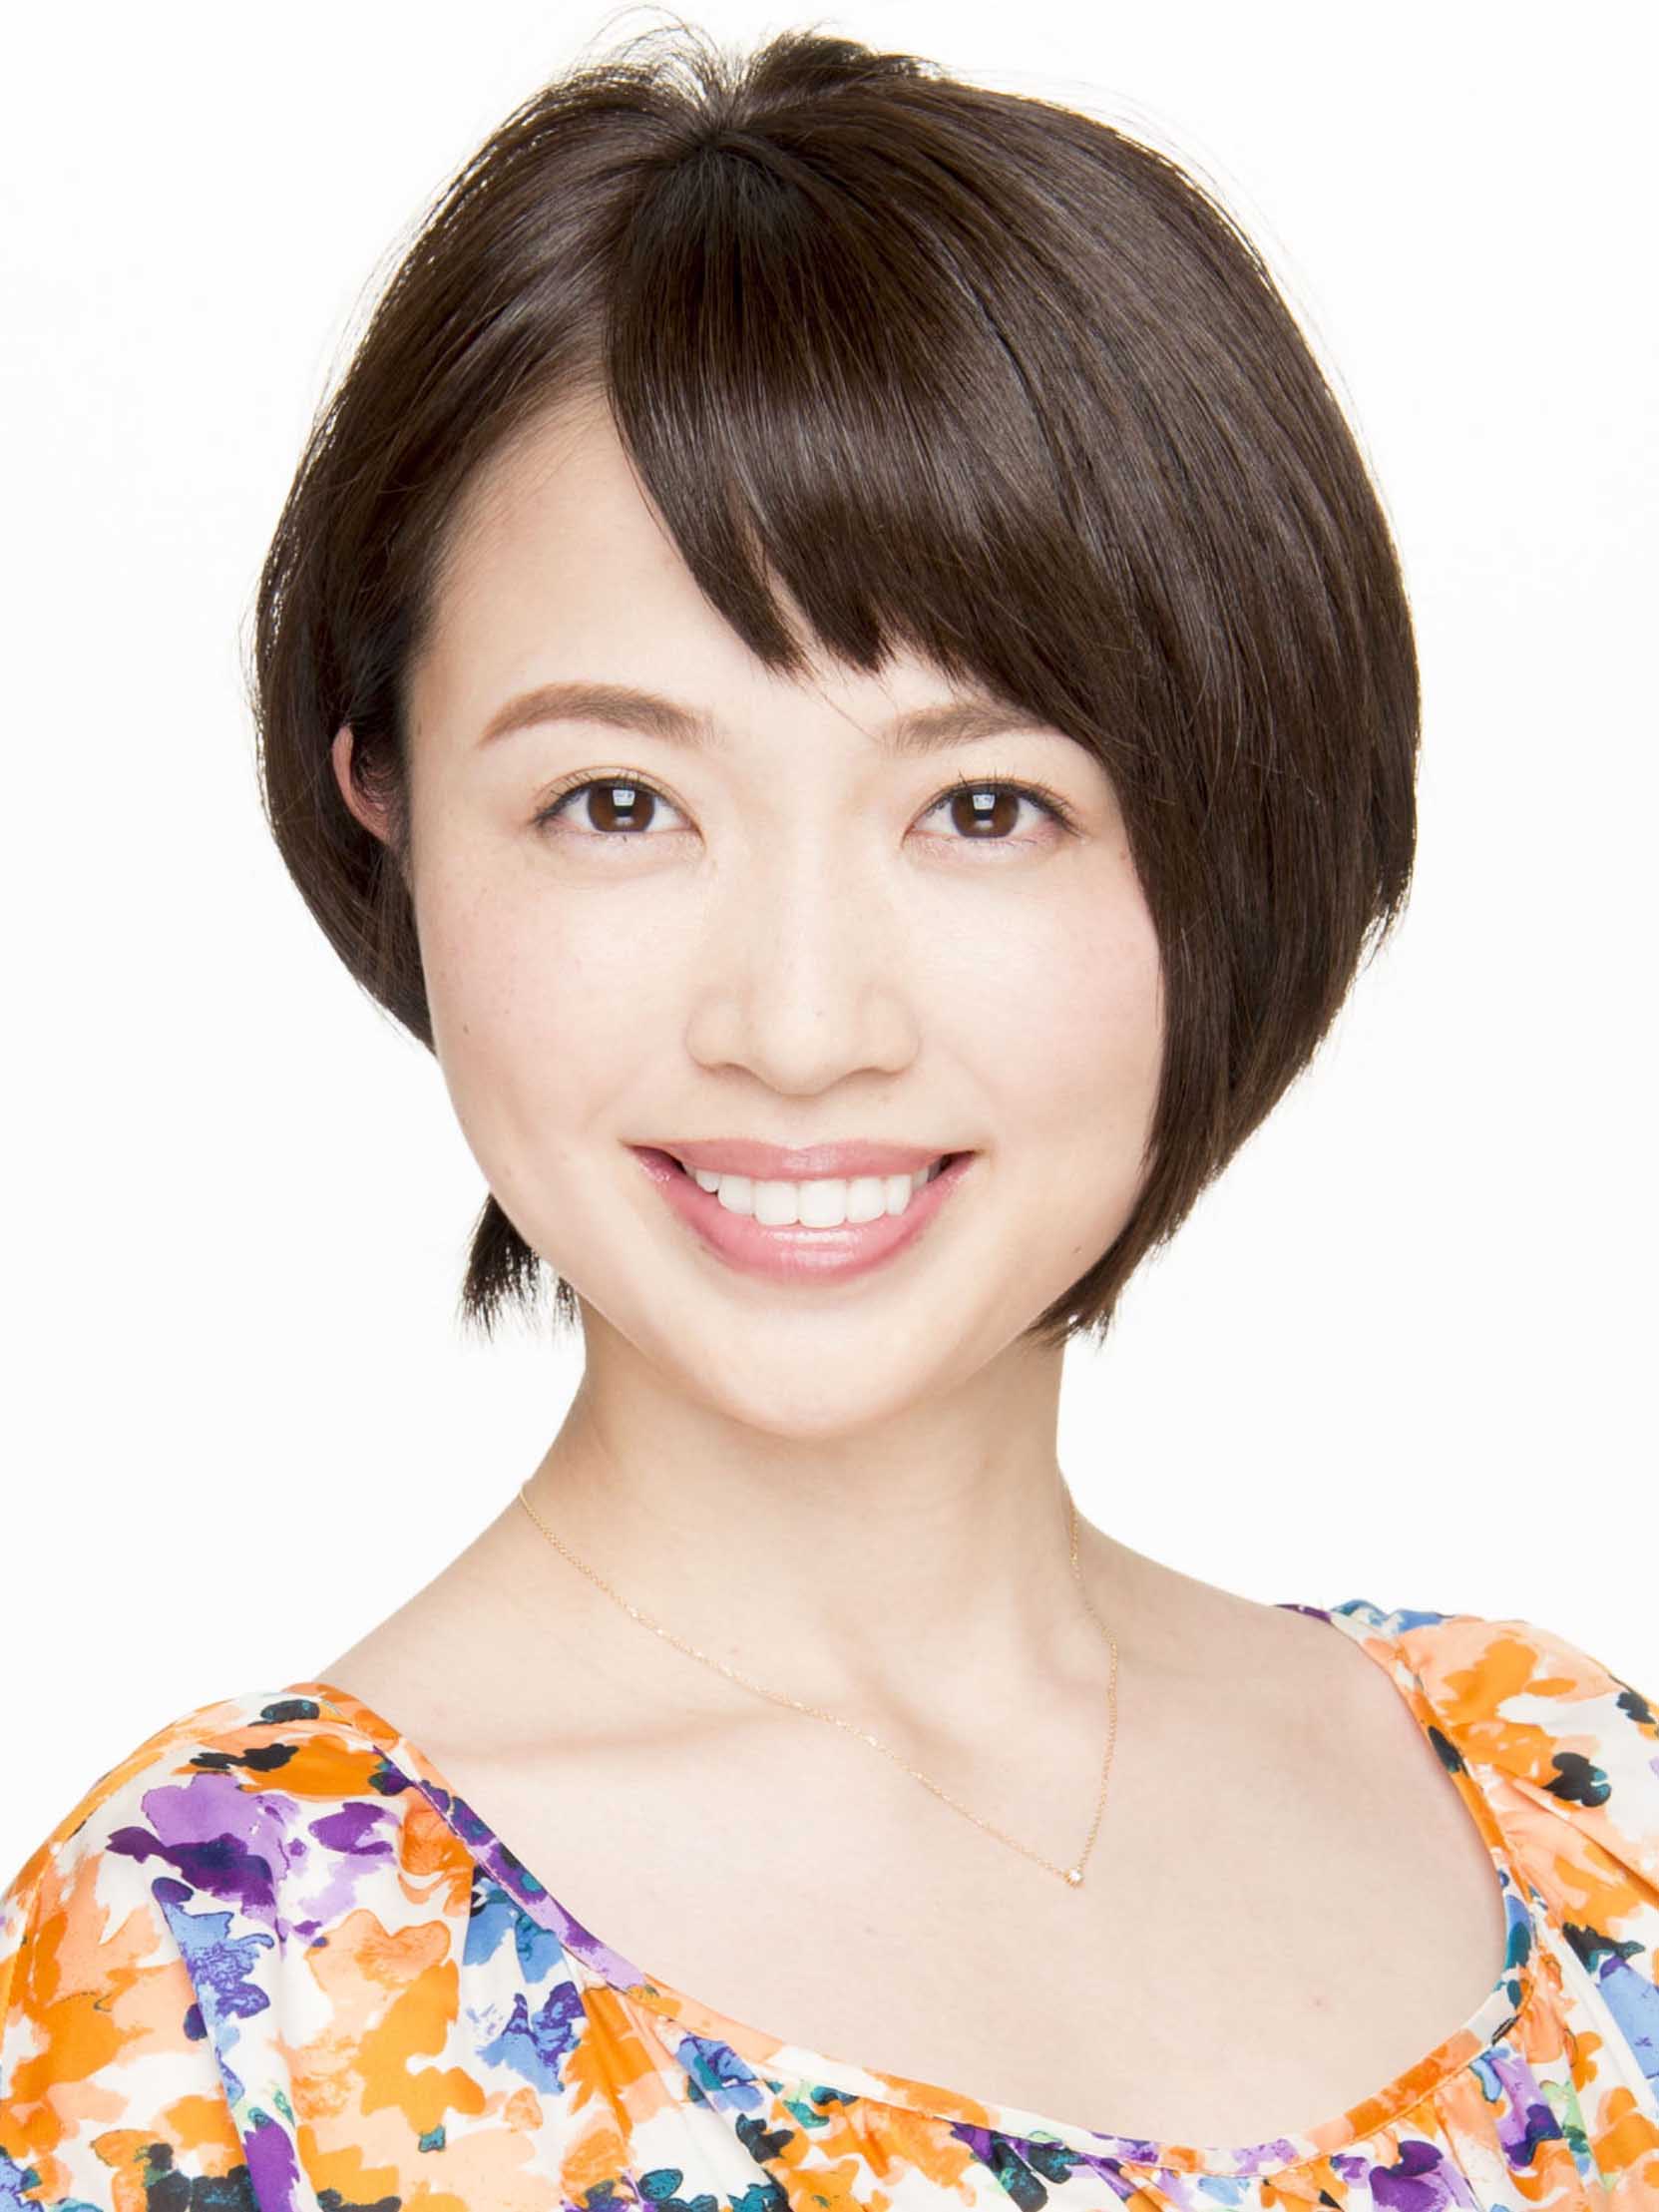 伊藤 加奈子 Profile Maimu 舞夢プロ 東京 大阪の芸能プロダクション